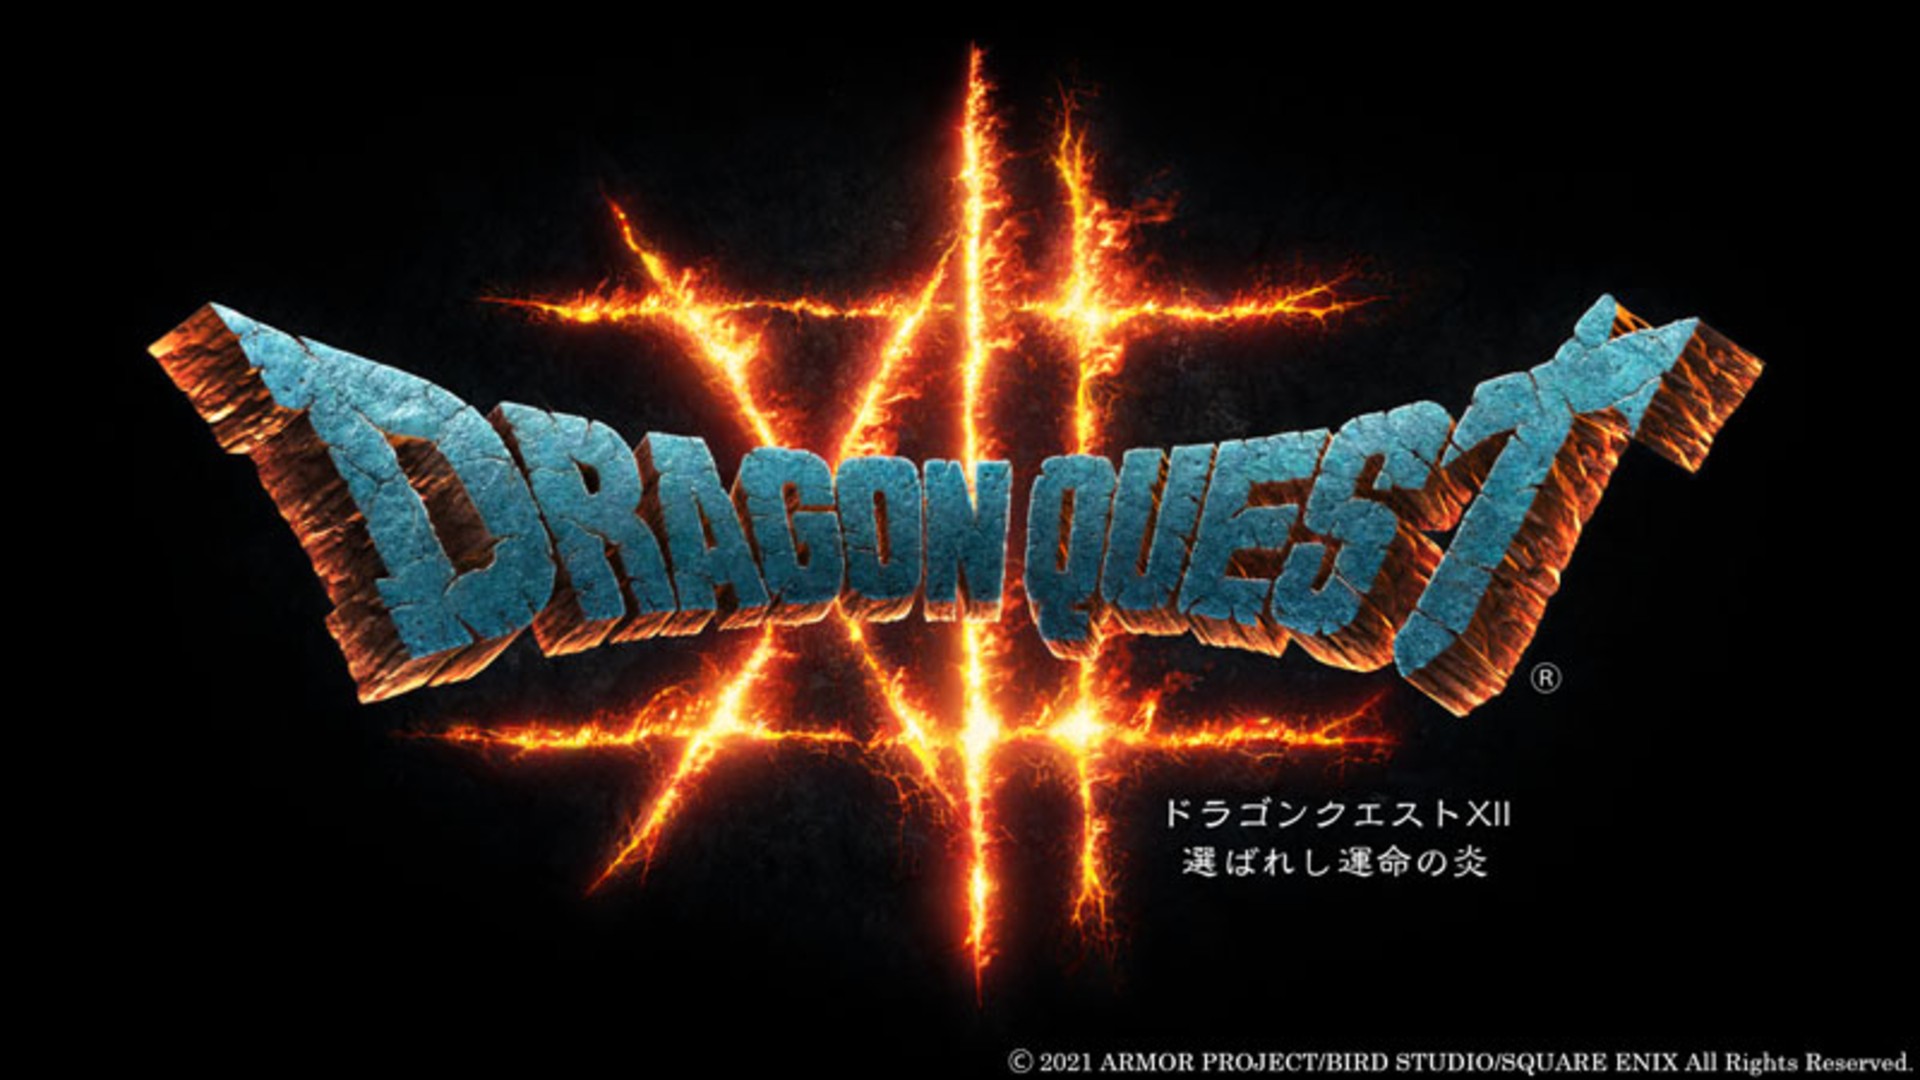 Dragon Quest XII: The Flames of Fate จะเป็นตัวกำหนดอนาคตของซีรีส์หลังจากนี้